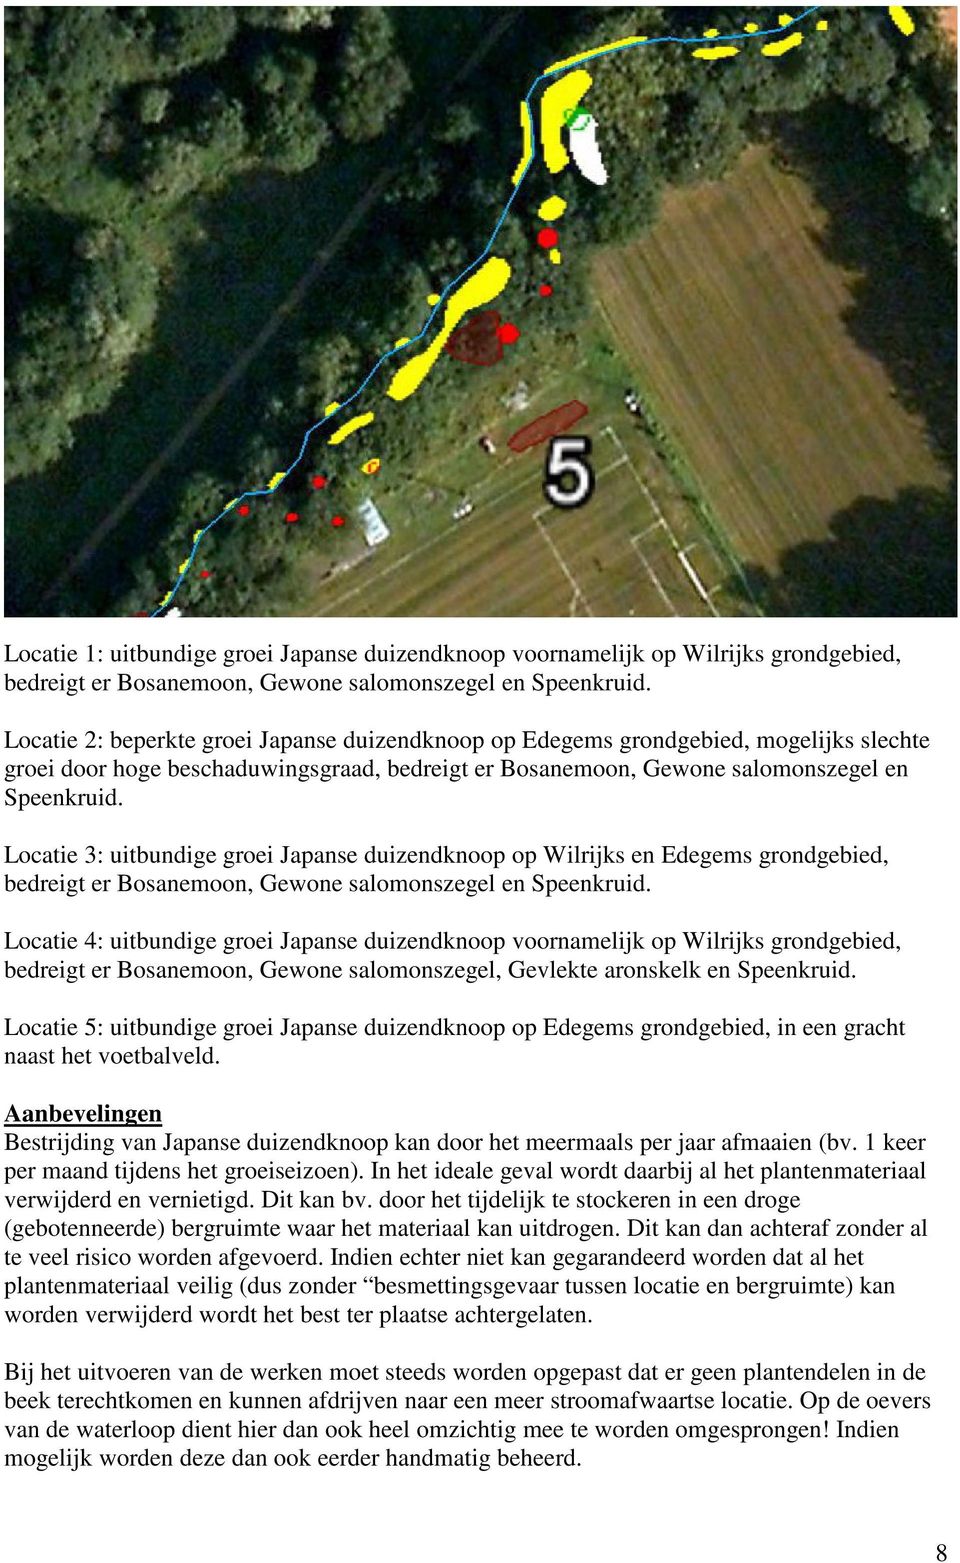 Locatie 3: uitbundige groei Japanse duizendknoop op Wilrijks en Edegems grondgebied, bedreigt er Bosanemoon, Gewone salomonszegel en Speenkruid.